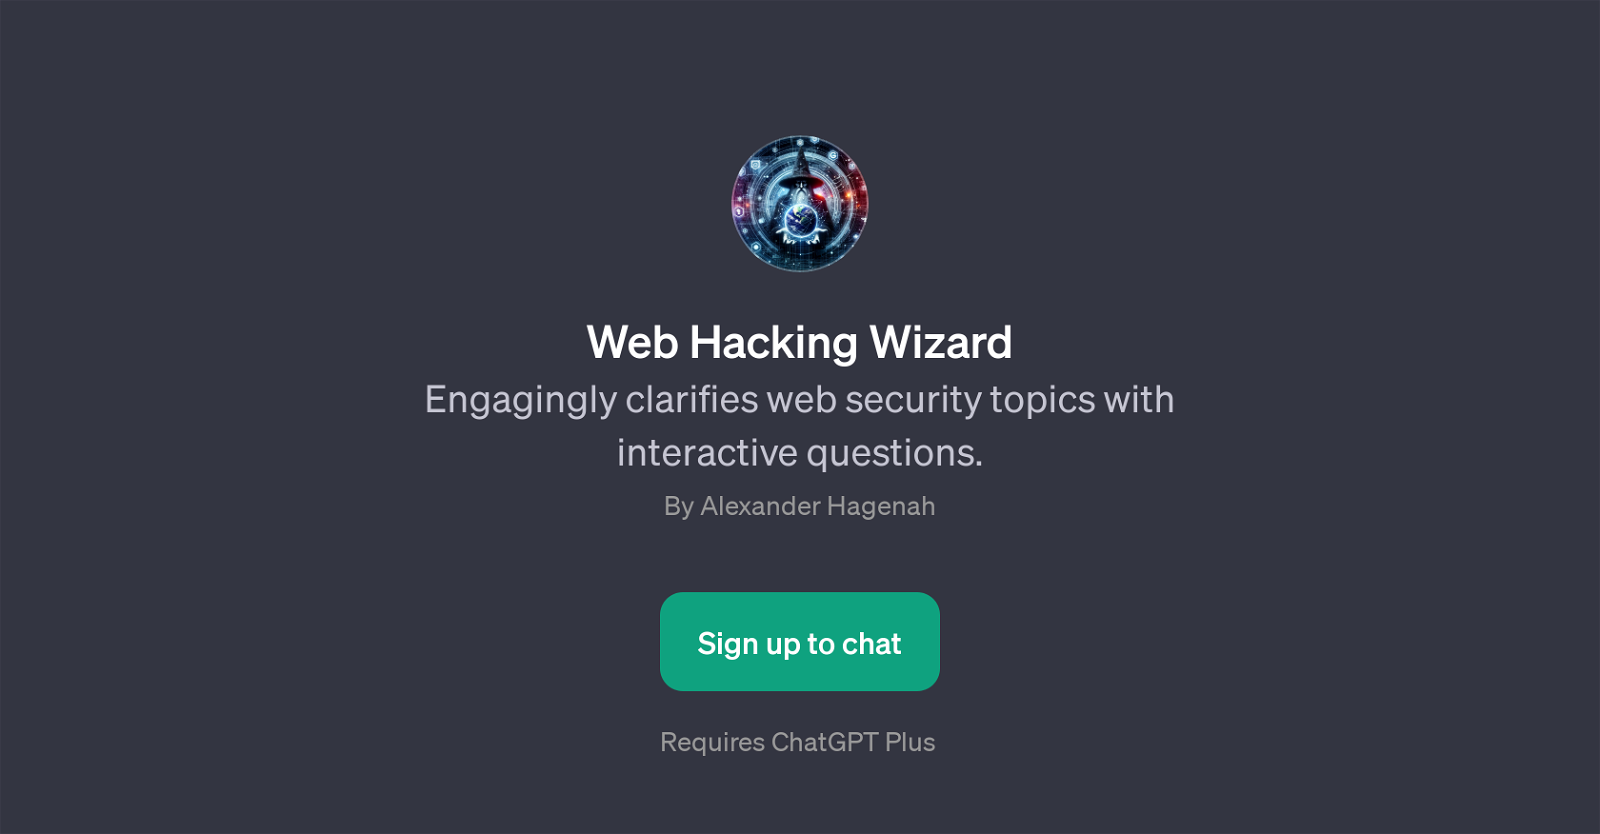 Web Hacking Wizard website